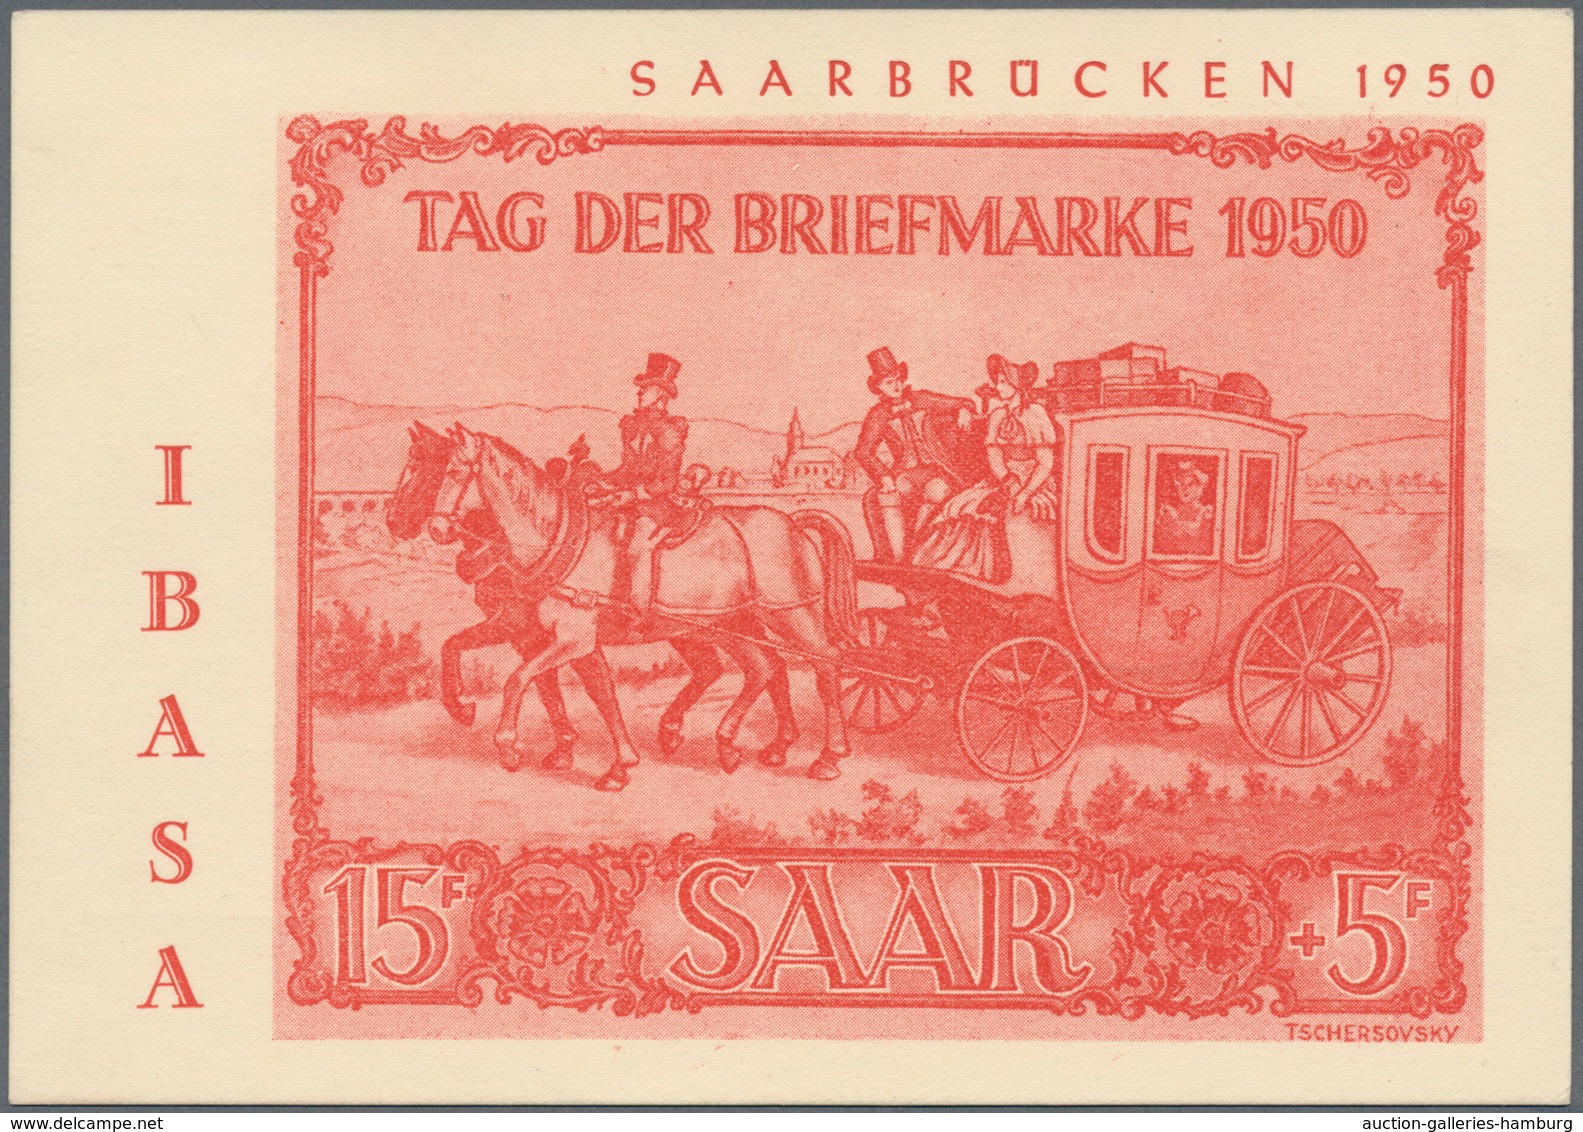 Saarland (1947/56): 1949, 8+2 Fr Bis 50+20 Fr Volkshilfe Komplett Mit IBASA-SoStpl. Auf IBASa-SoKte. - Unused Stamps